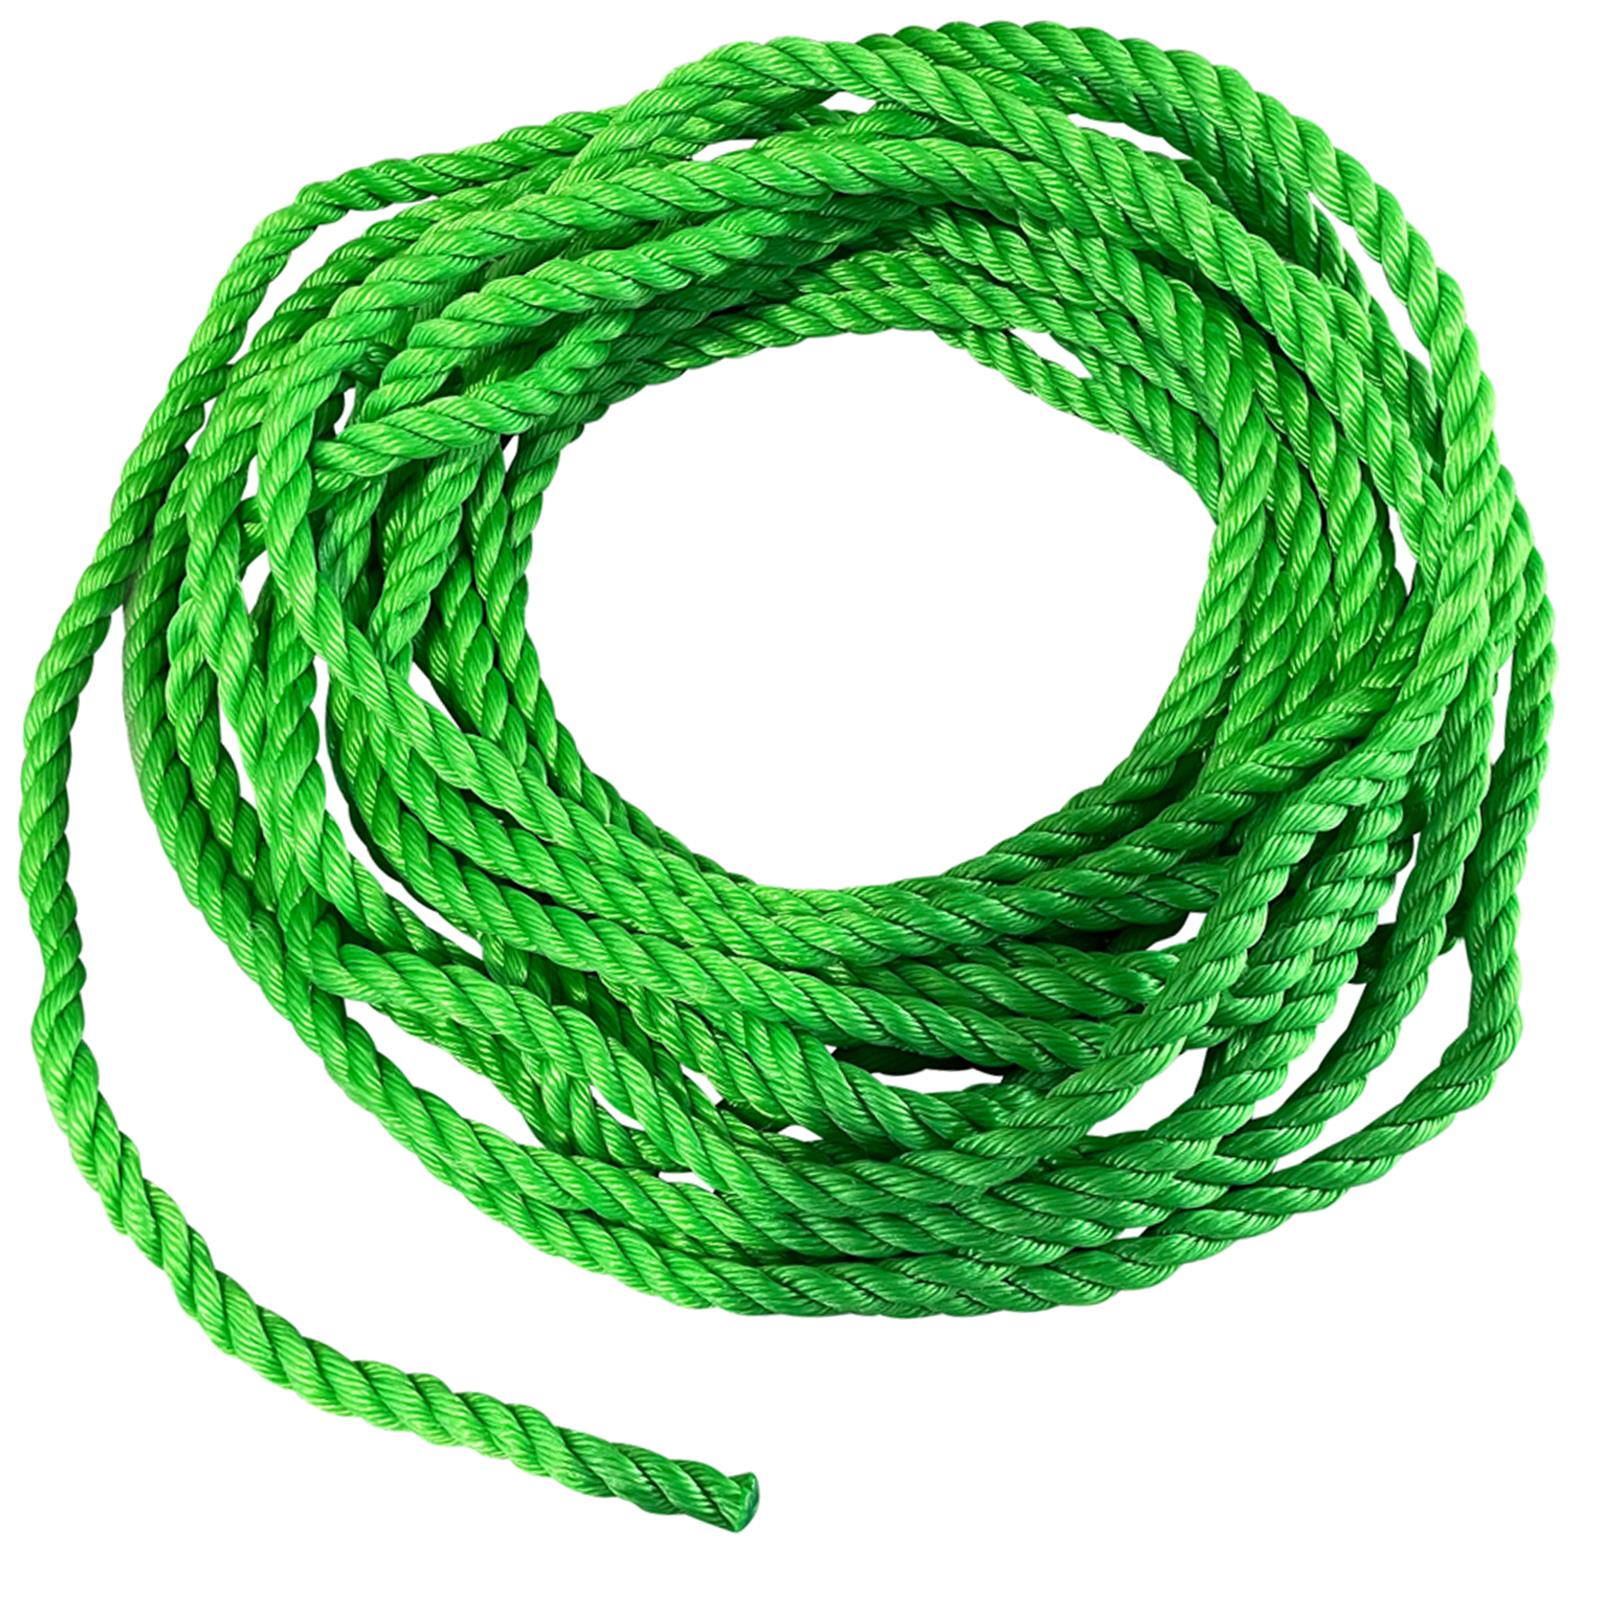 BlueSpot Polypropylene Rope Green 15m x 12mm 50ft